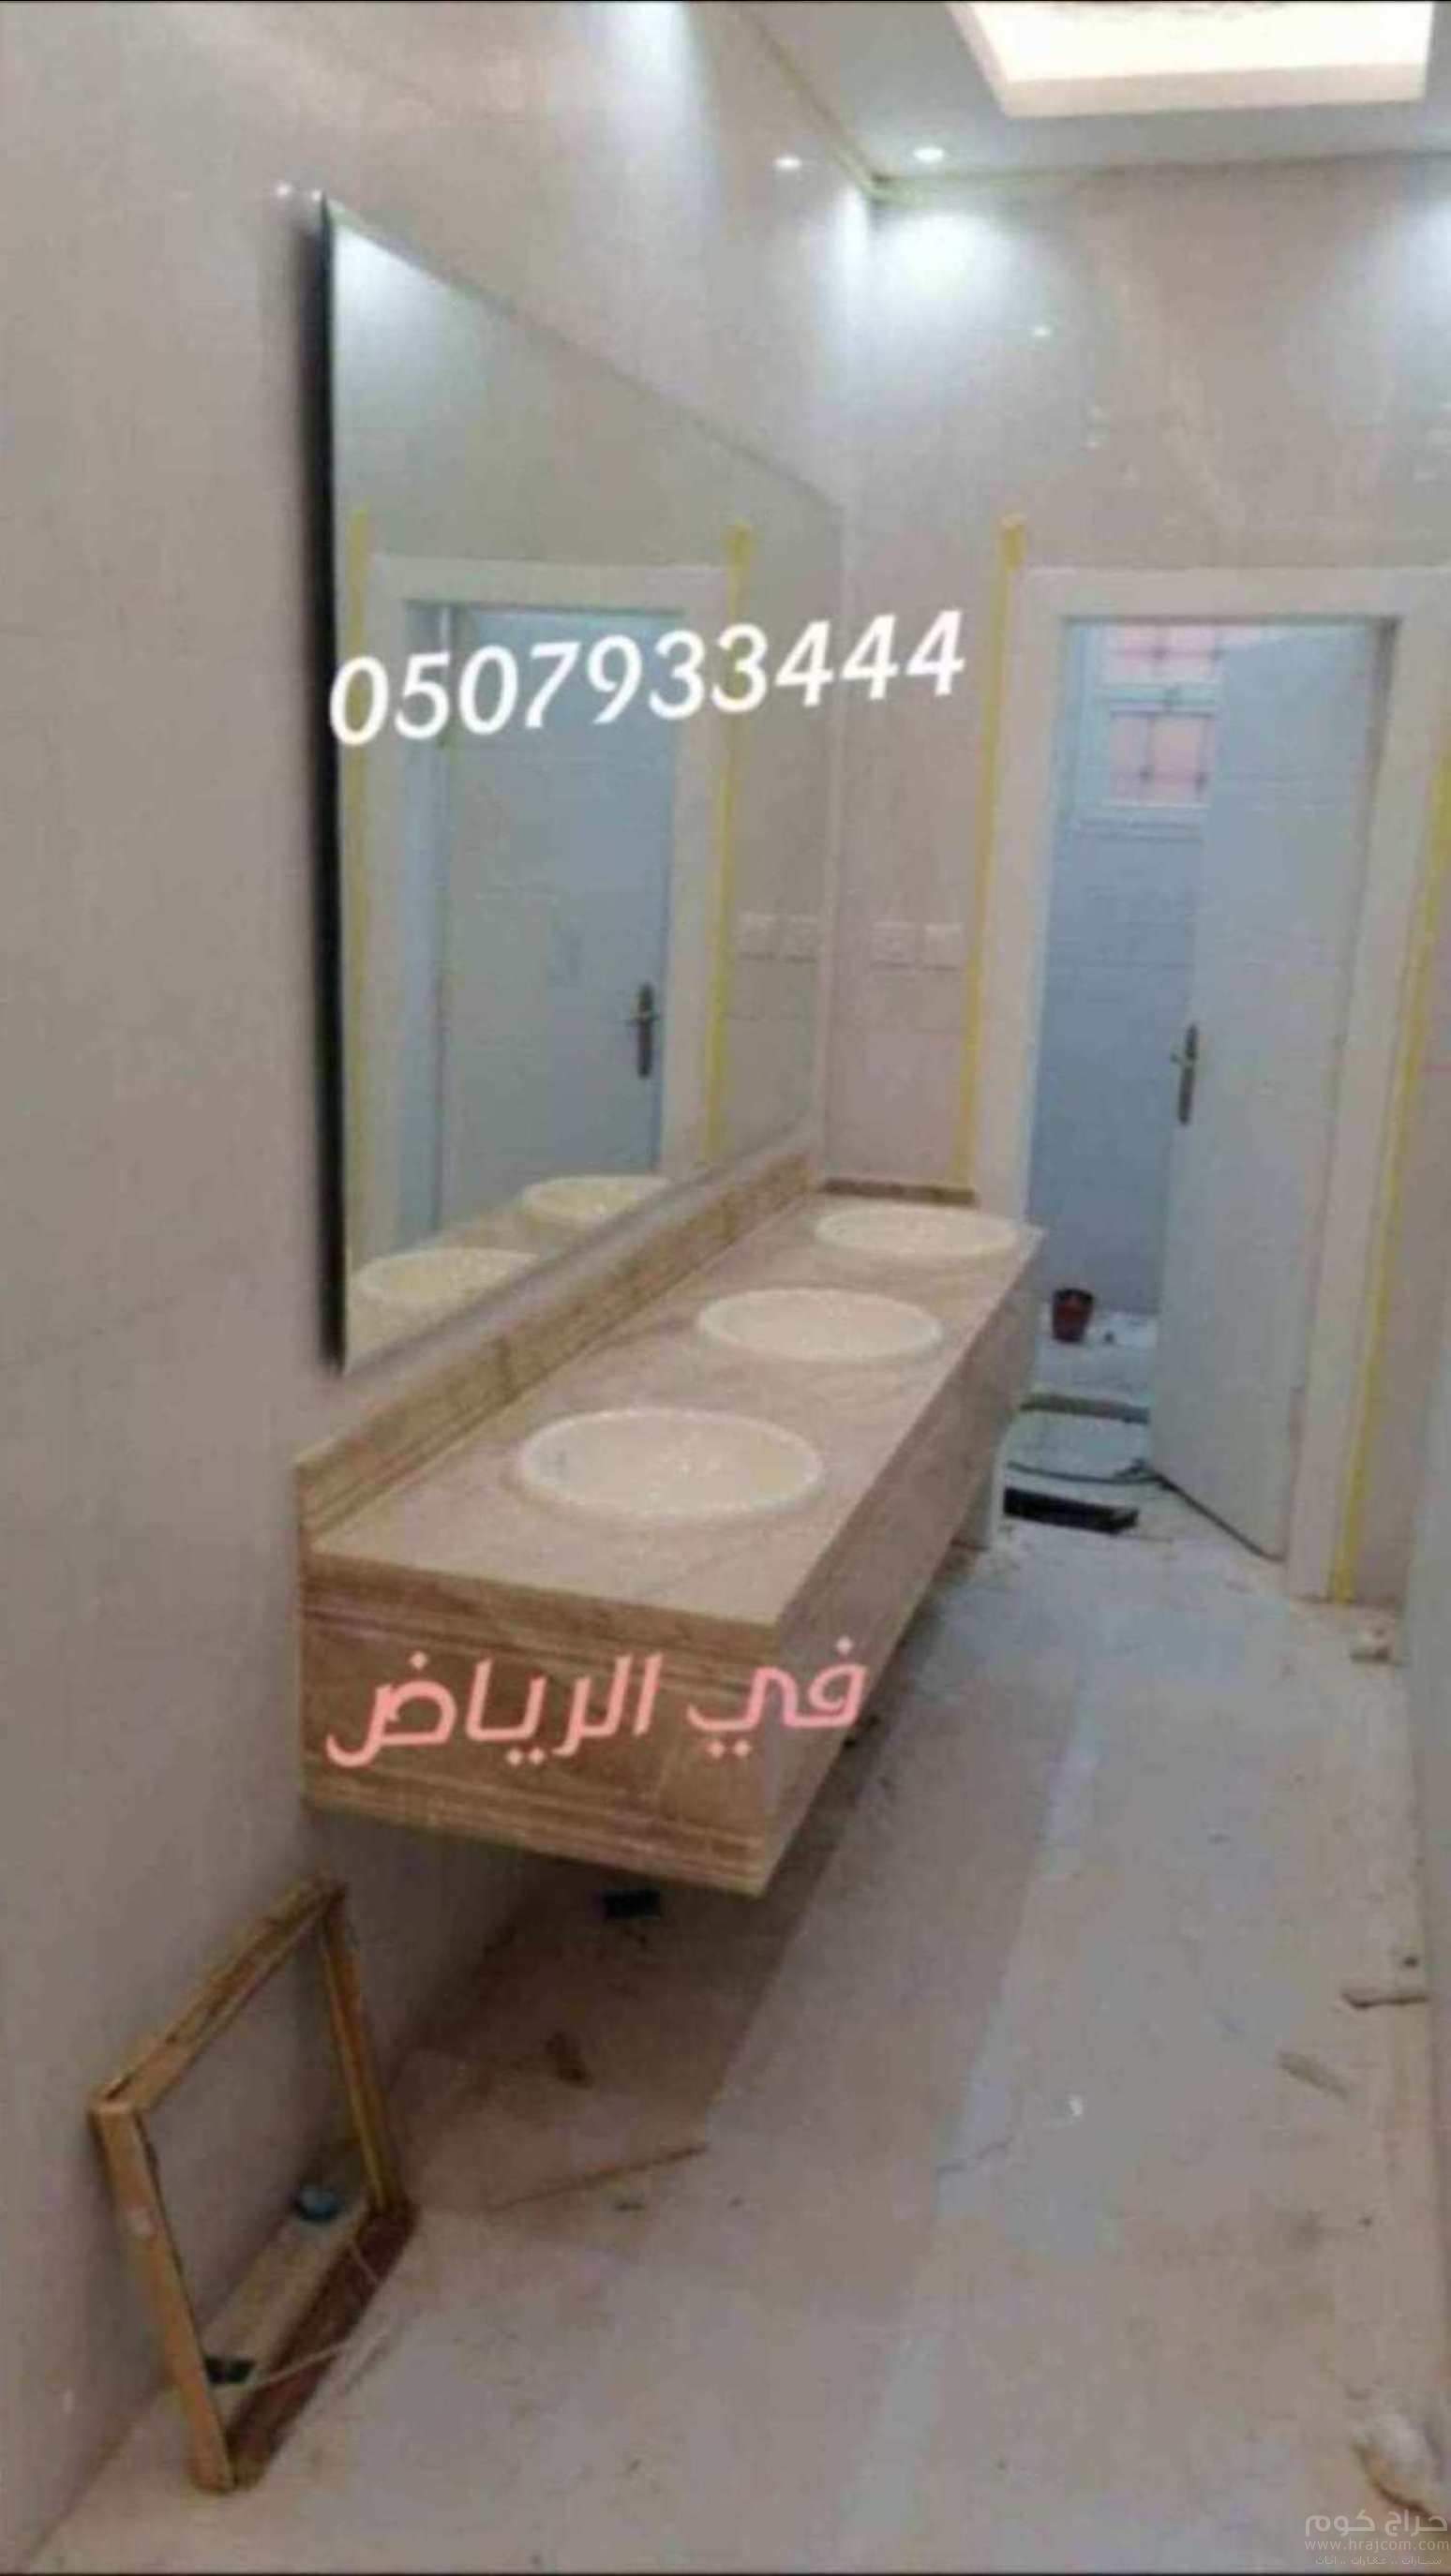 مغاسل رخام الرياض صور مغاسل حمامات,صور مغاسل رخام حديثة